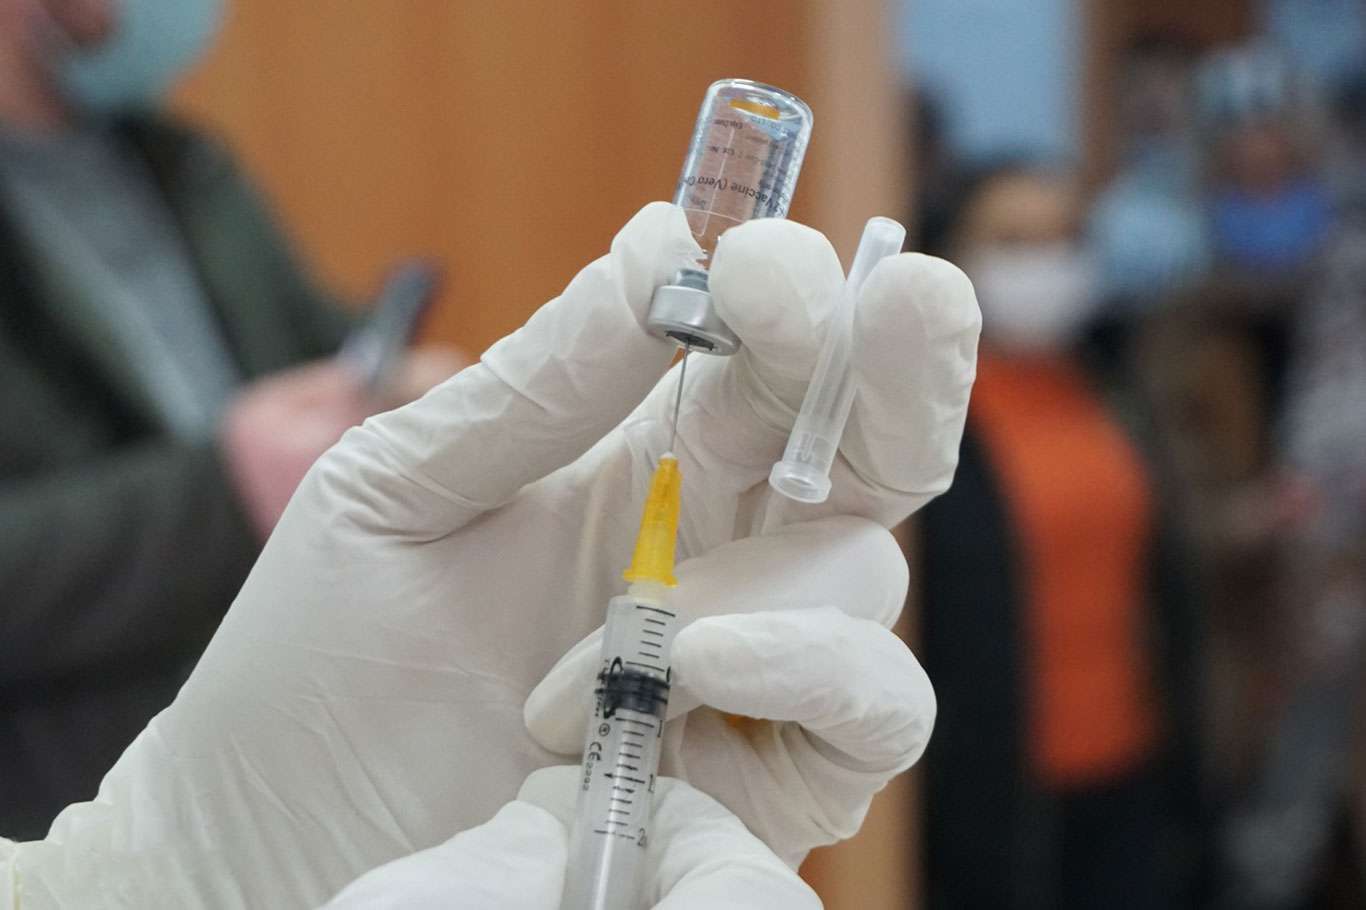 "Bozuk Covid-19 aşısı" iddialarına ilişkin açıklama